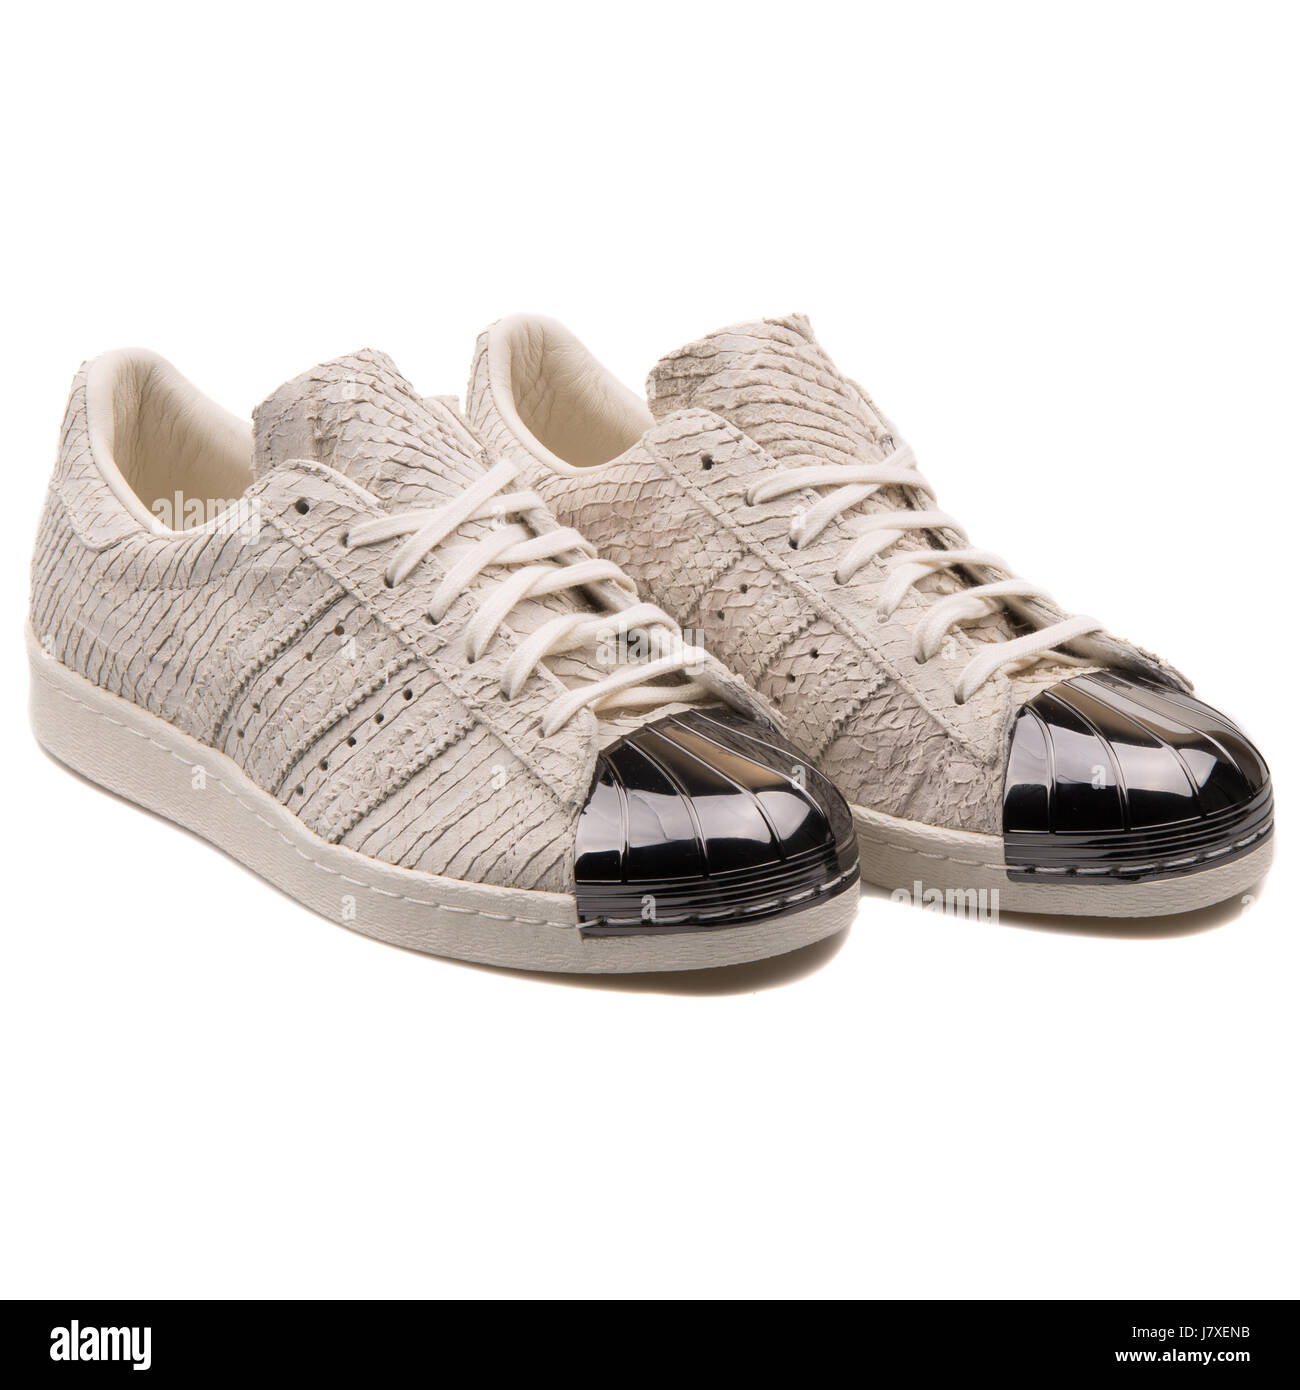 Adidas Superstar 80s (Running White & Gum) End